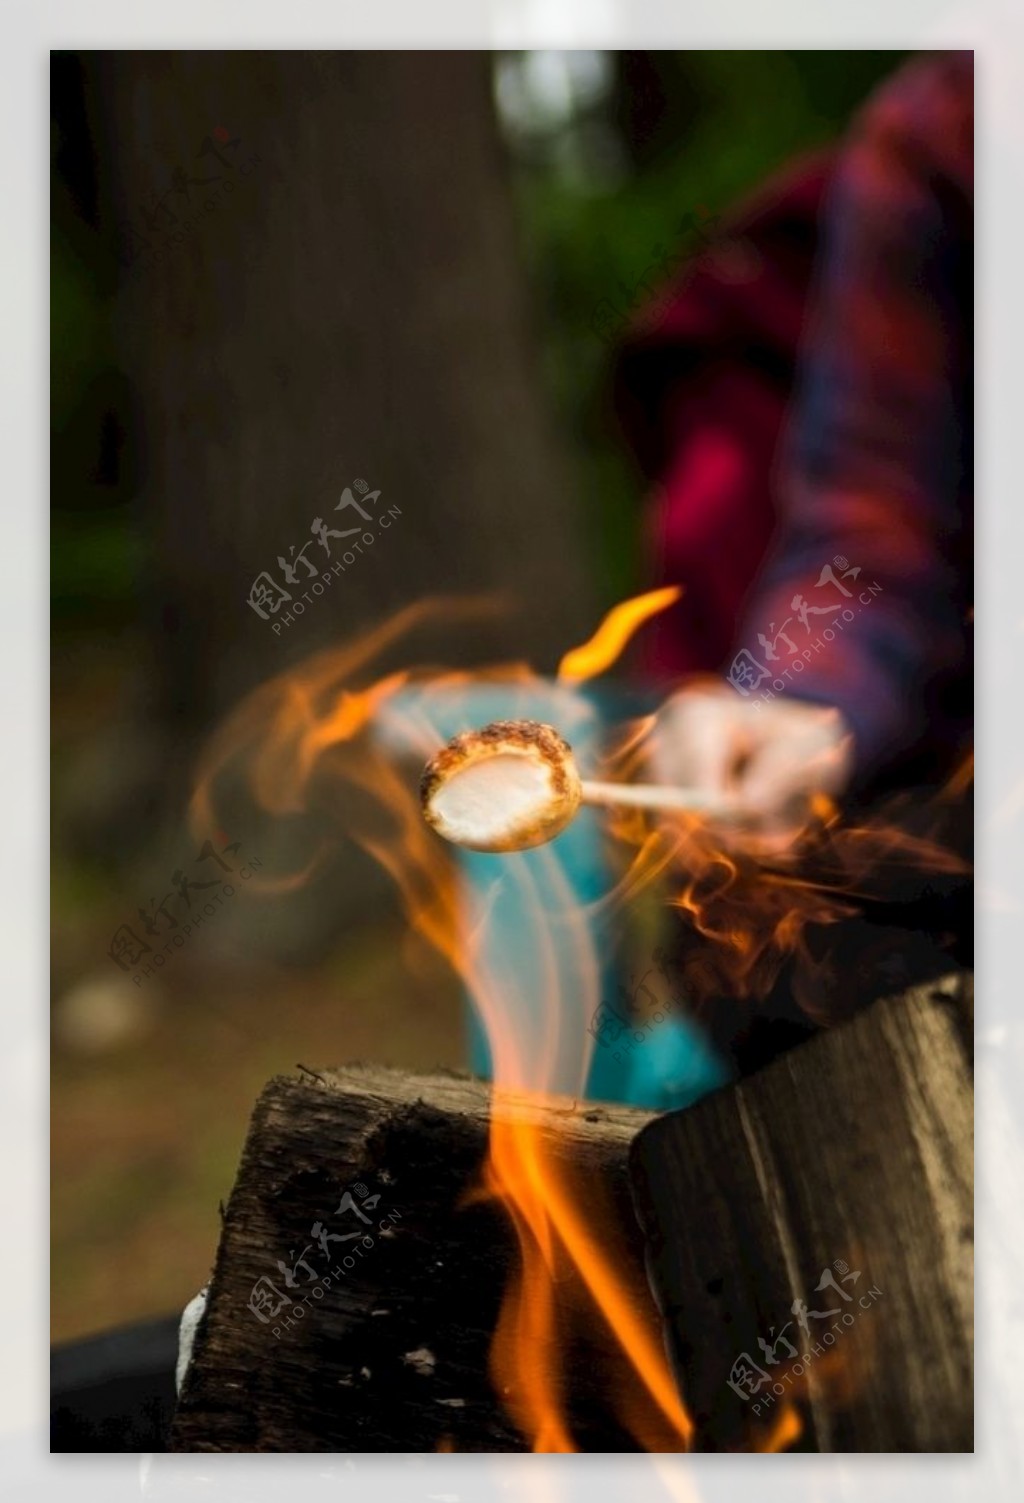 炽热的炭火-篝火柴火壁纸